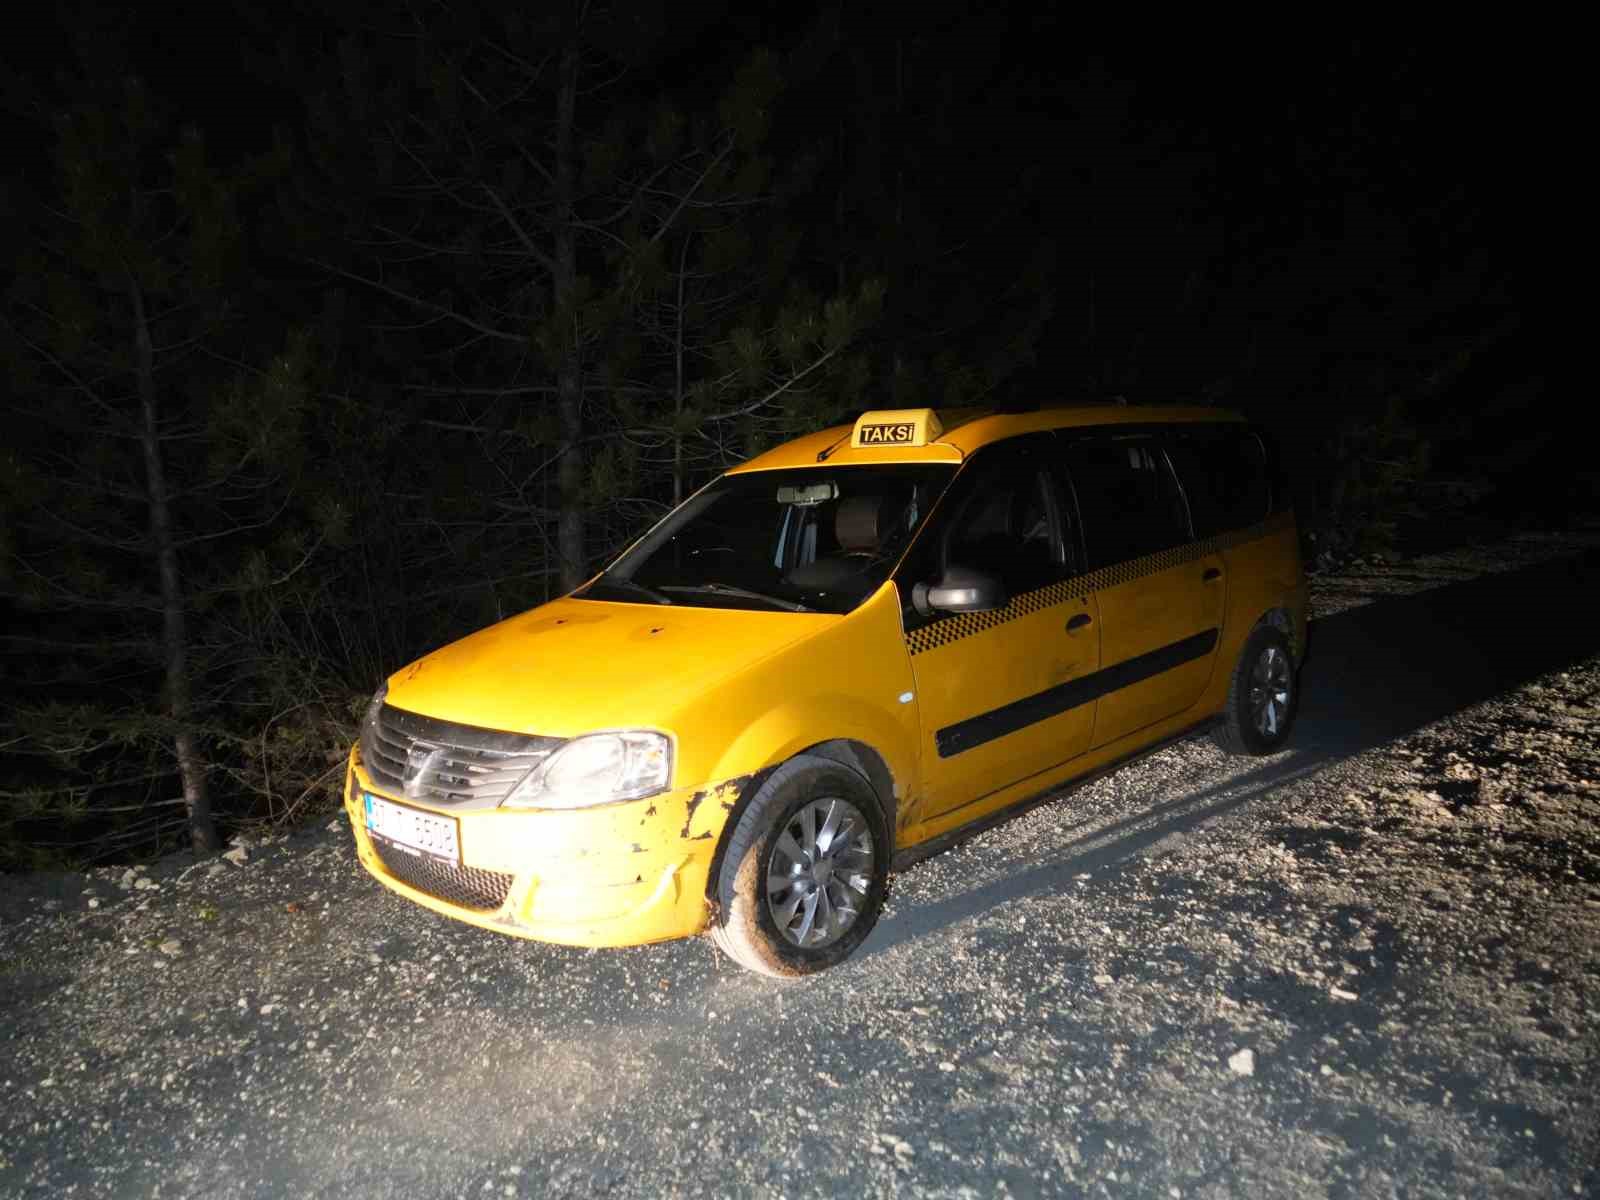 Kayıp olarak aranan ticari taksi şoförü, ormanlık alanda silahla vurulmuş halde ölü bulundu
